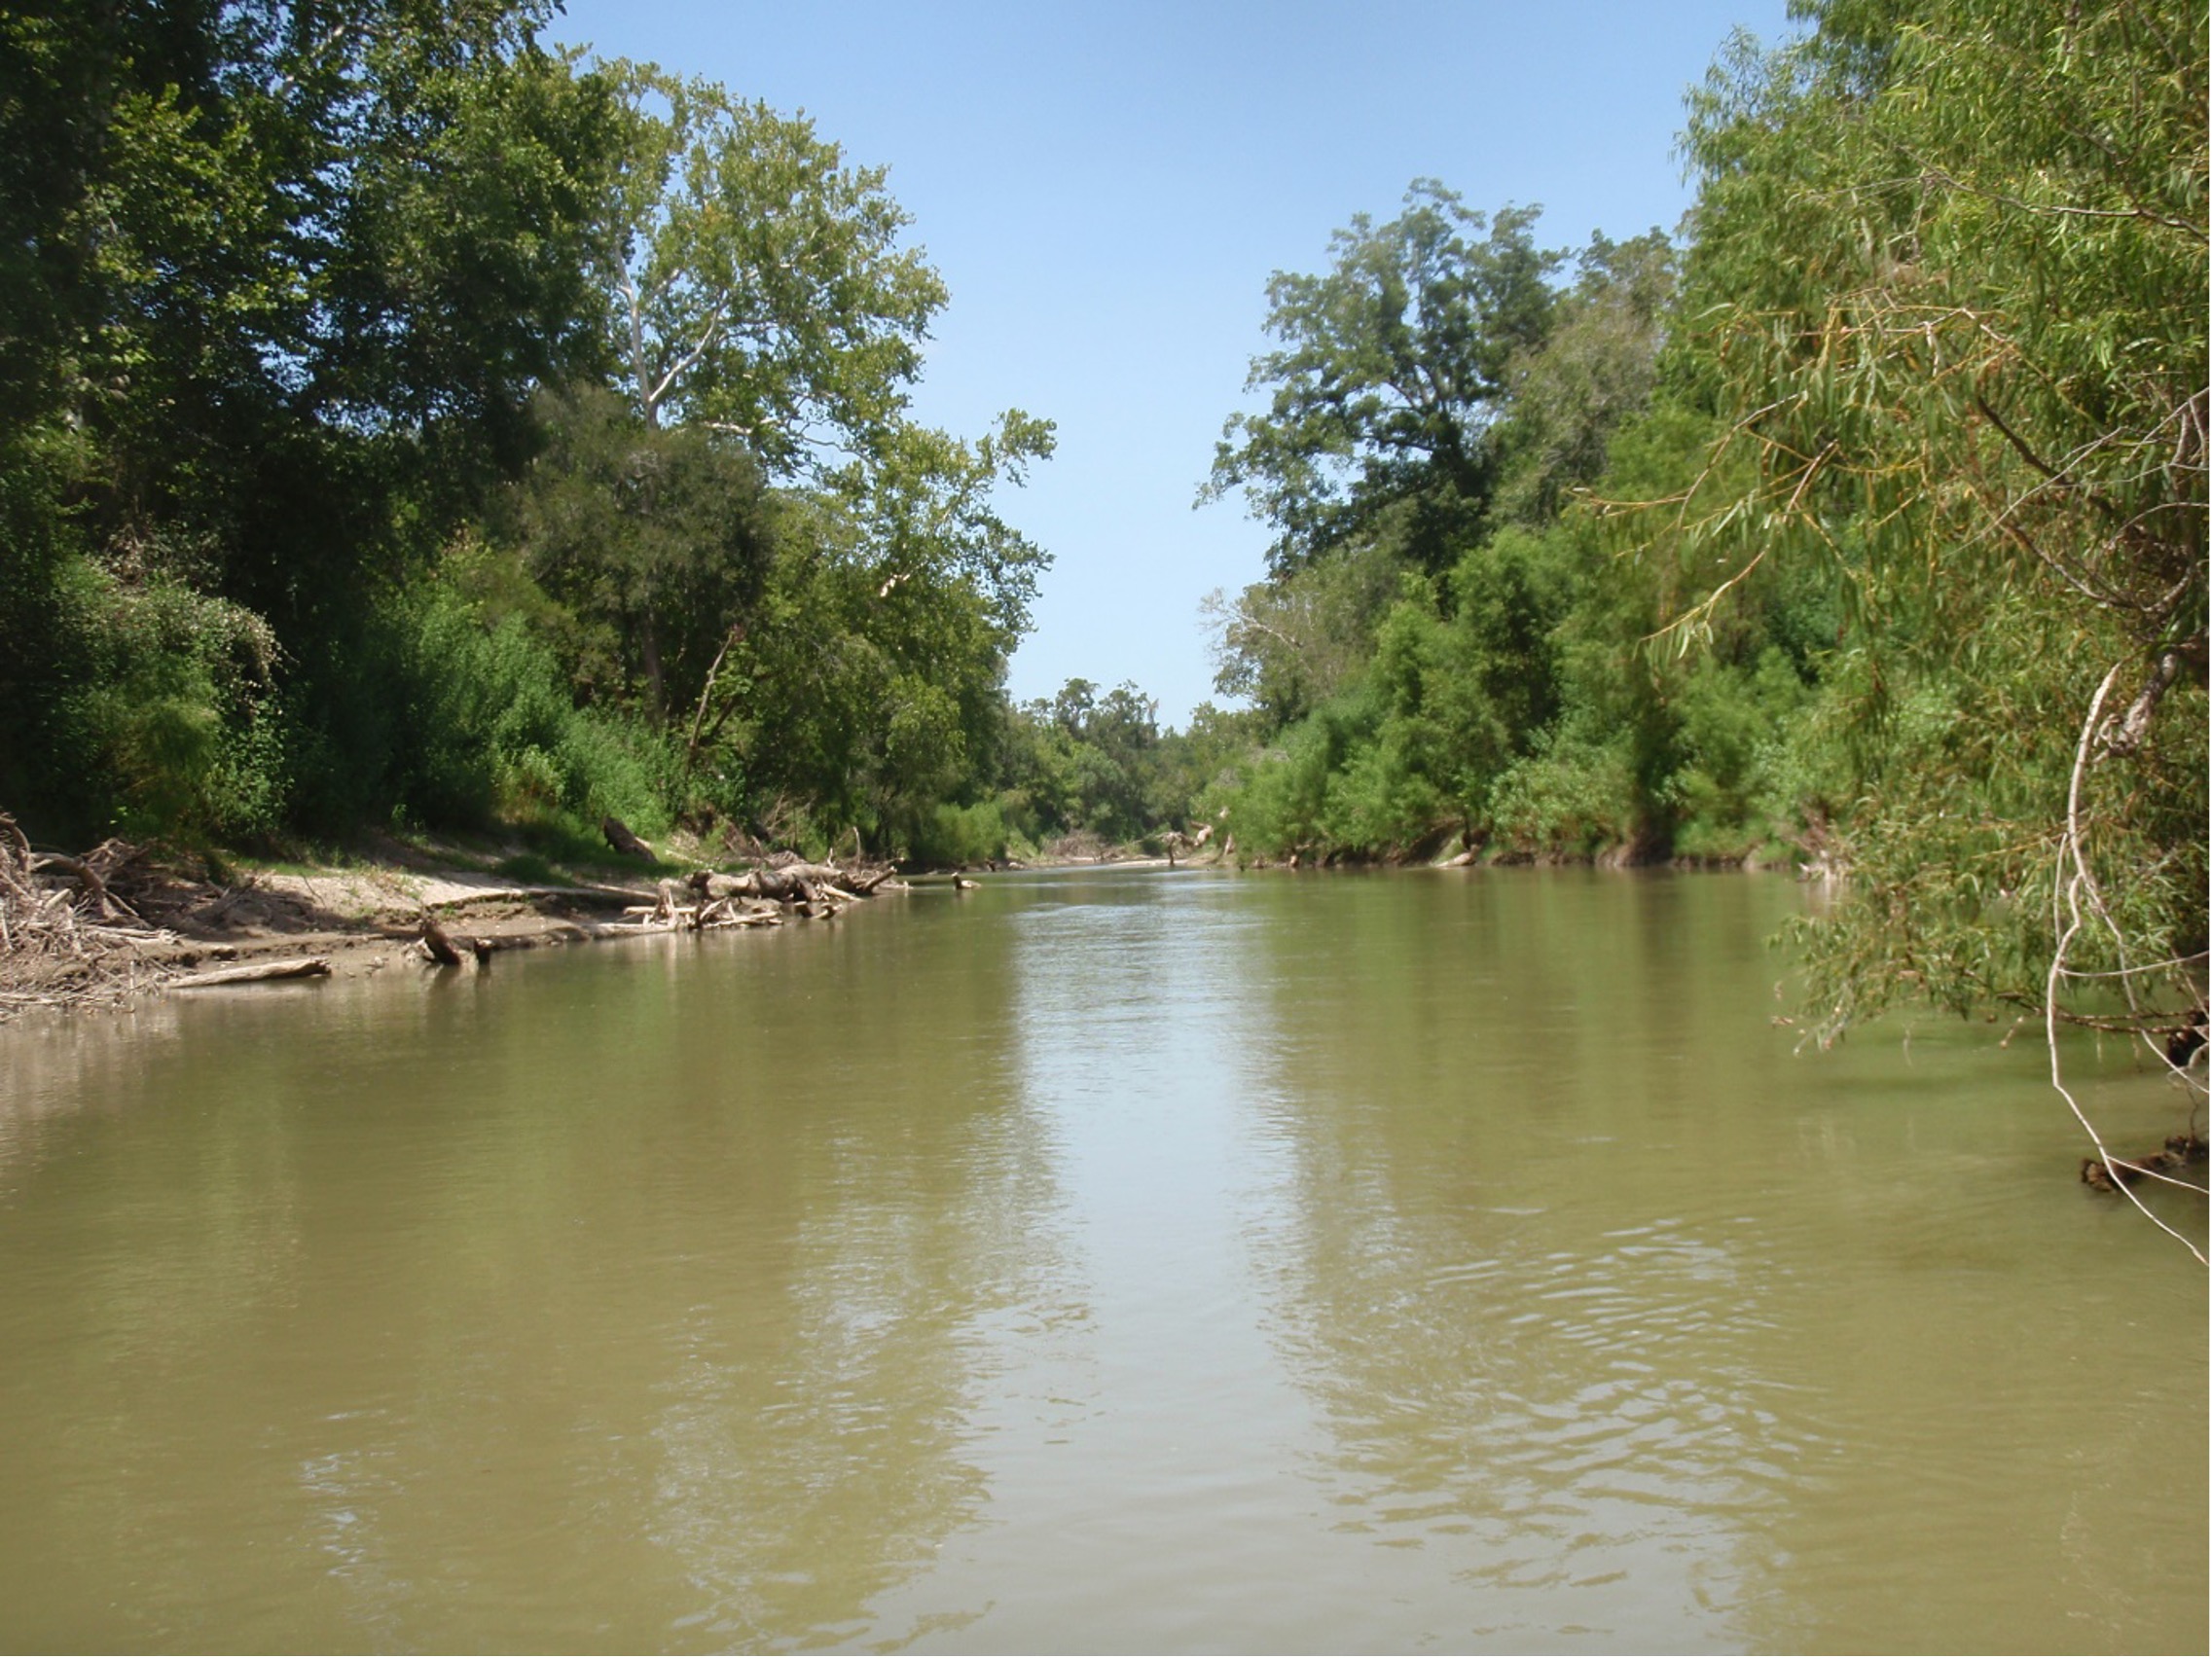 The San Antonio River in Goliad